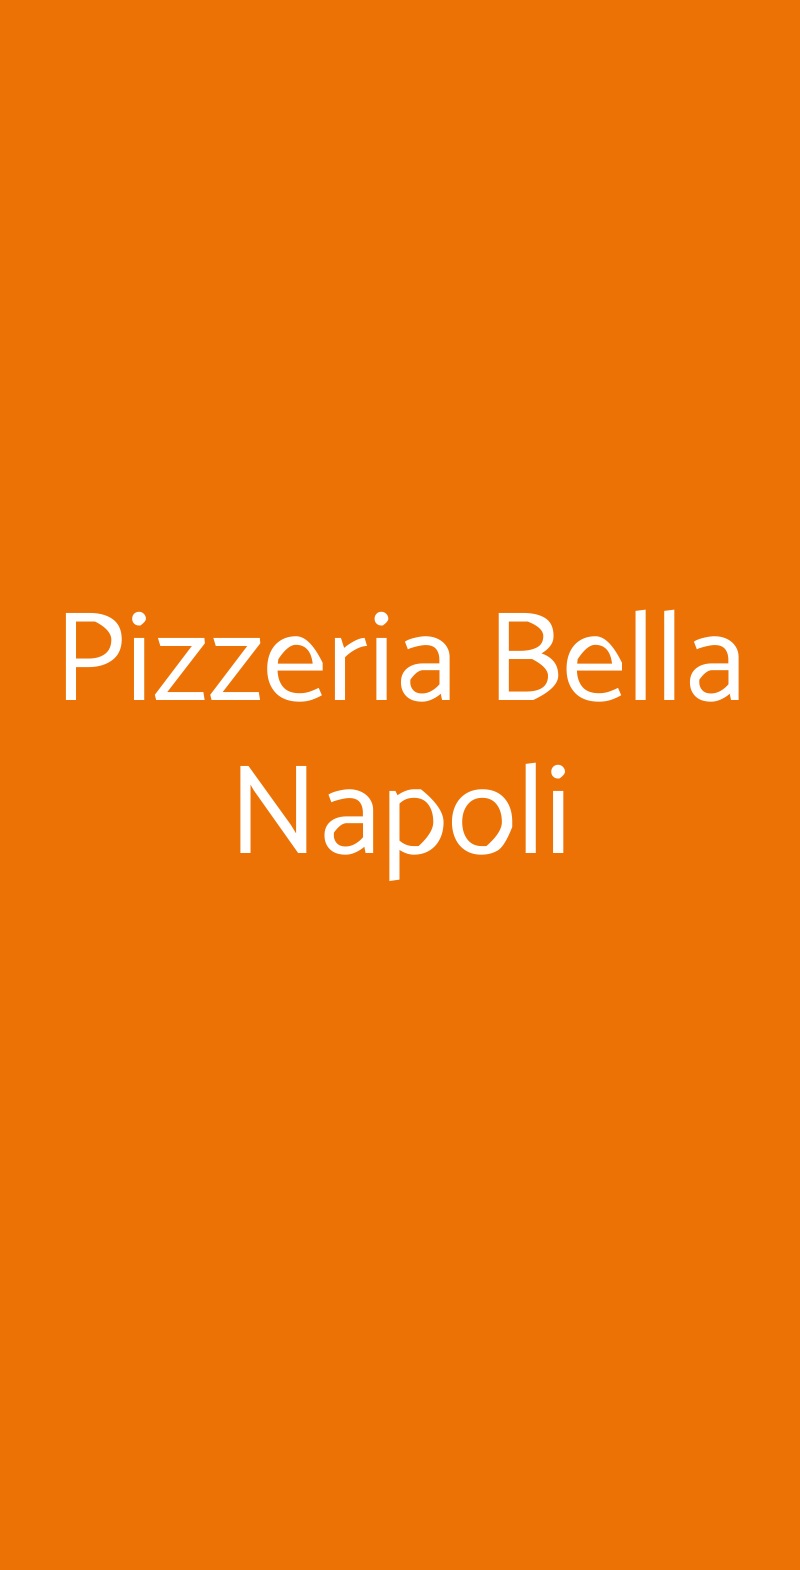 Pizzeria Bella Napoli Catania menù 1 pagina